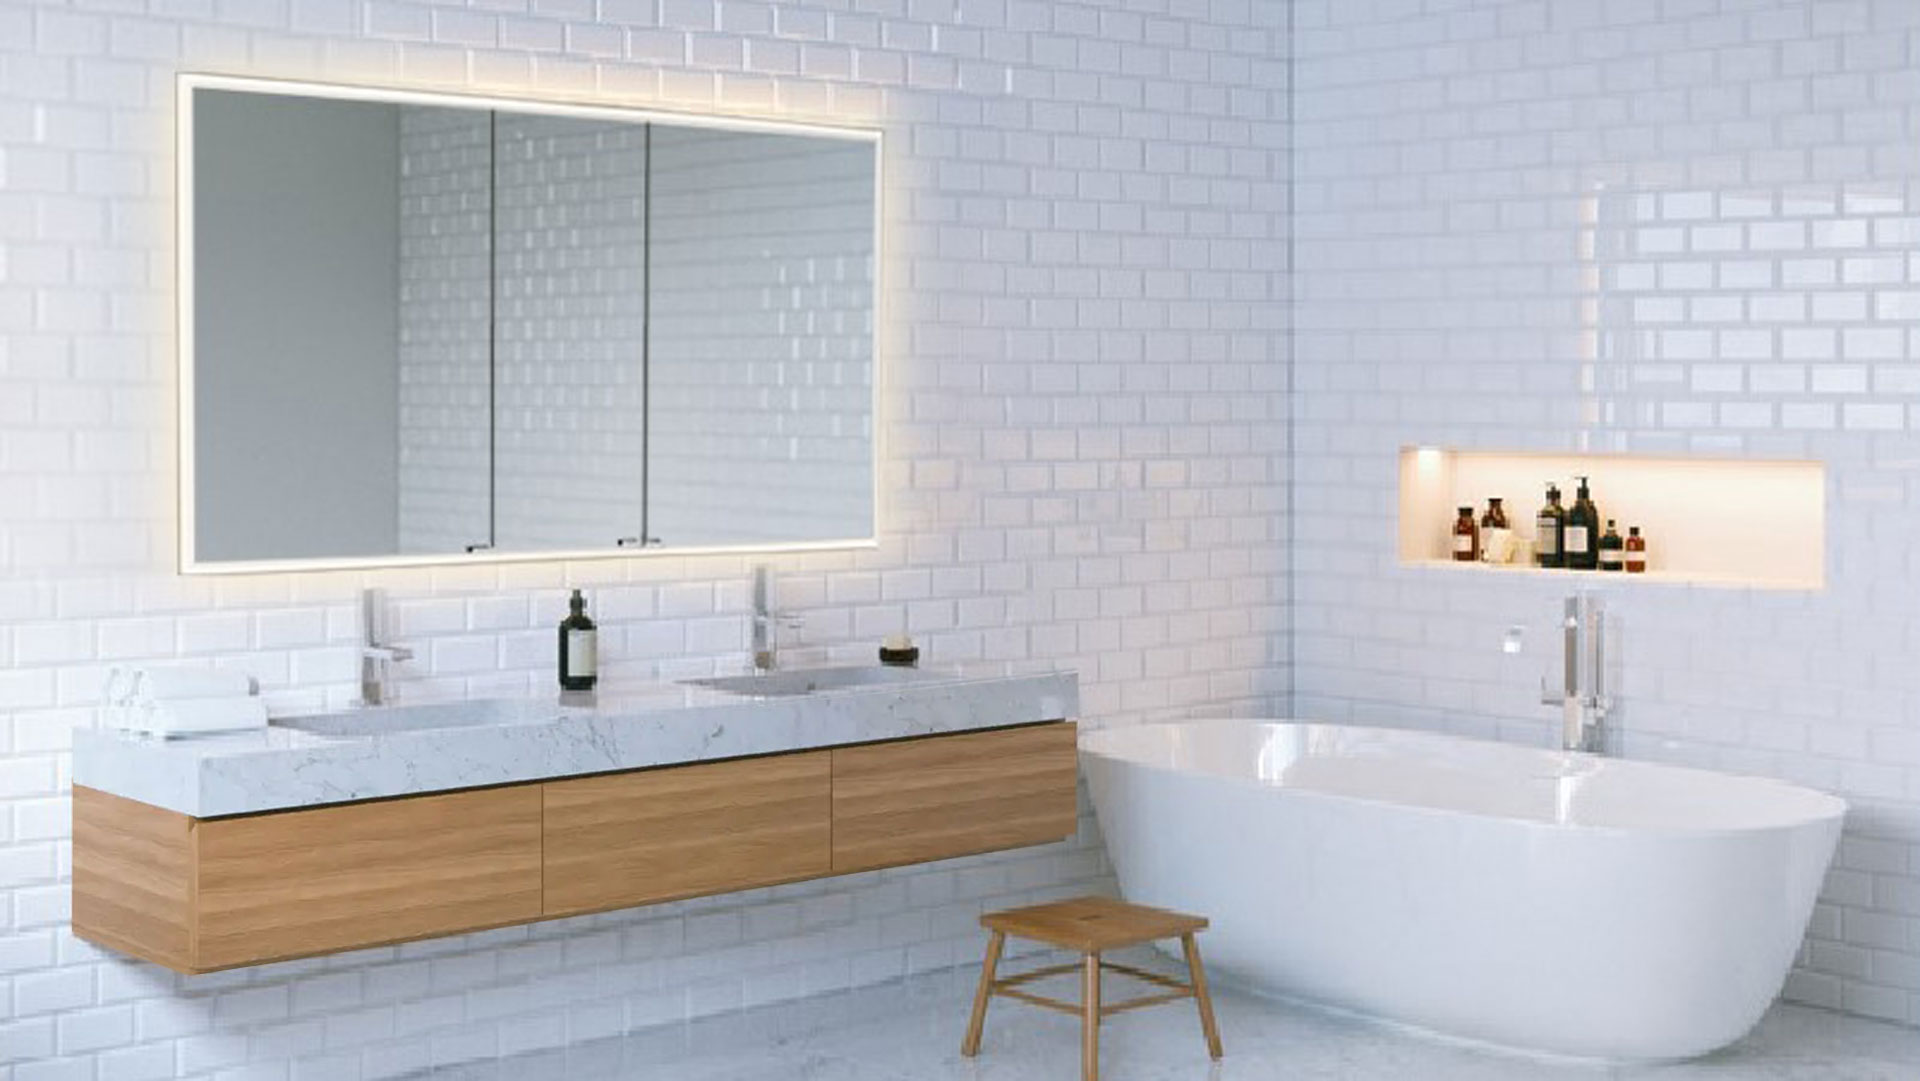 Licht-Spiegelschrank von SIDLER, Swiss Design für Ihr Badezimmer